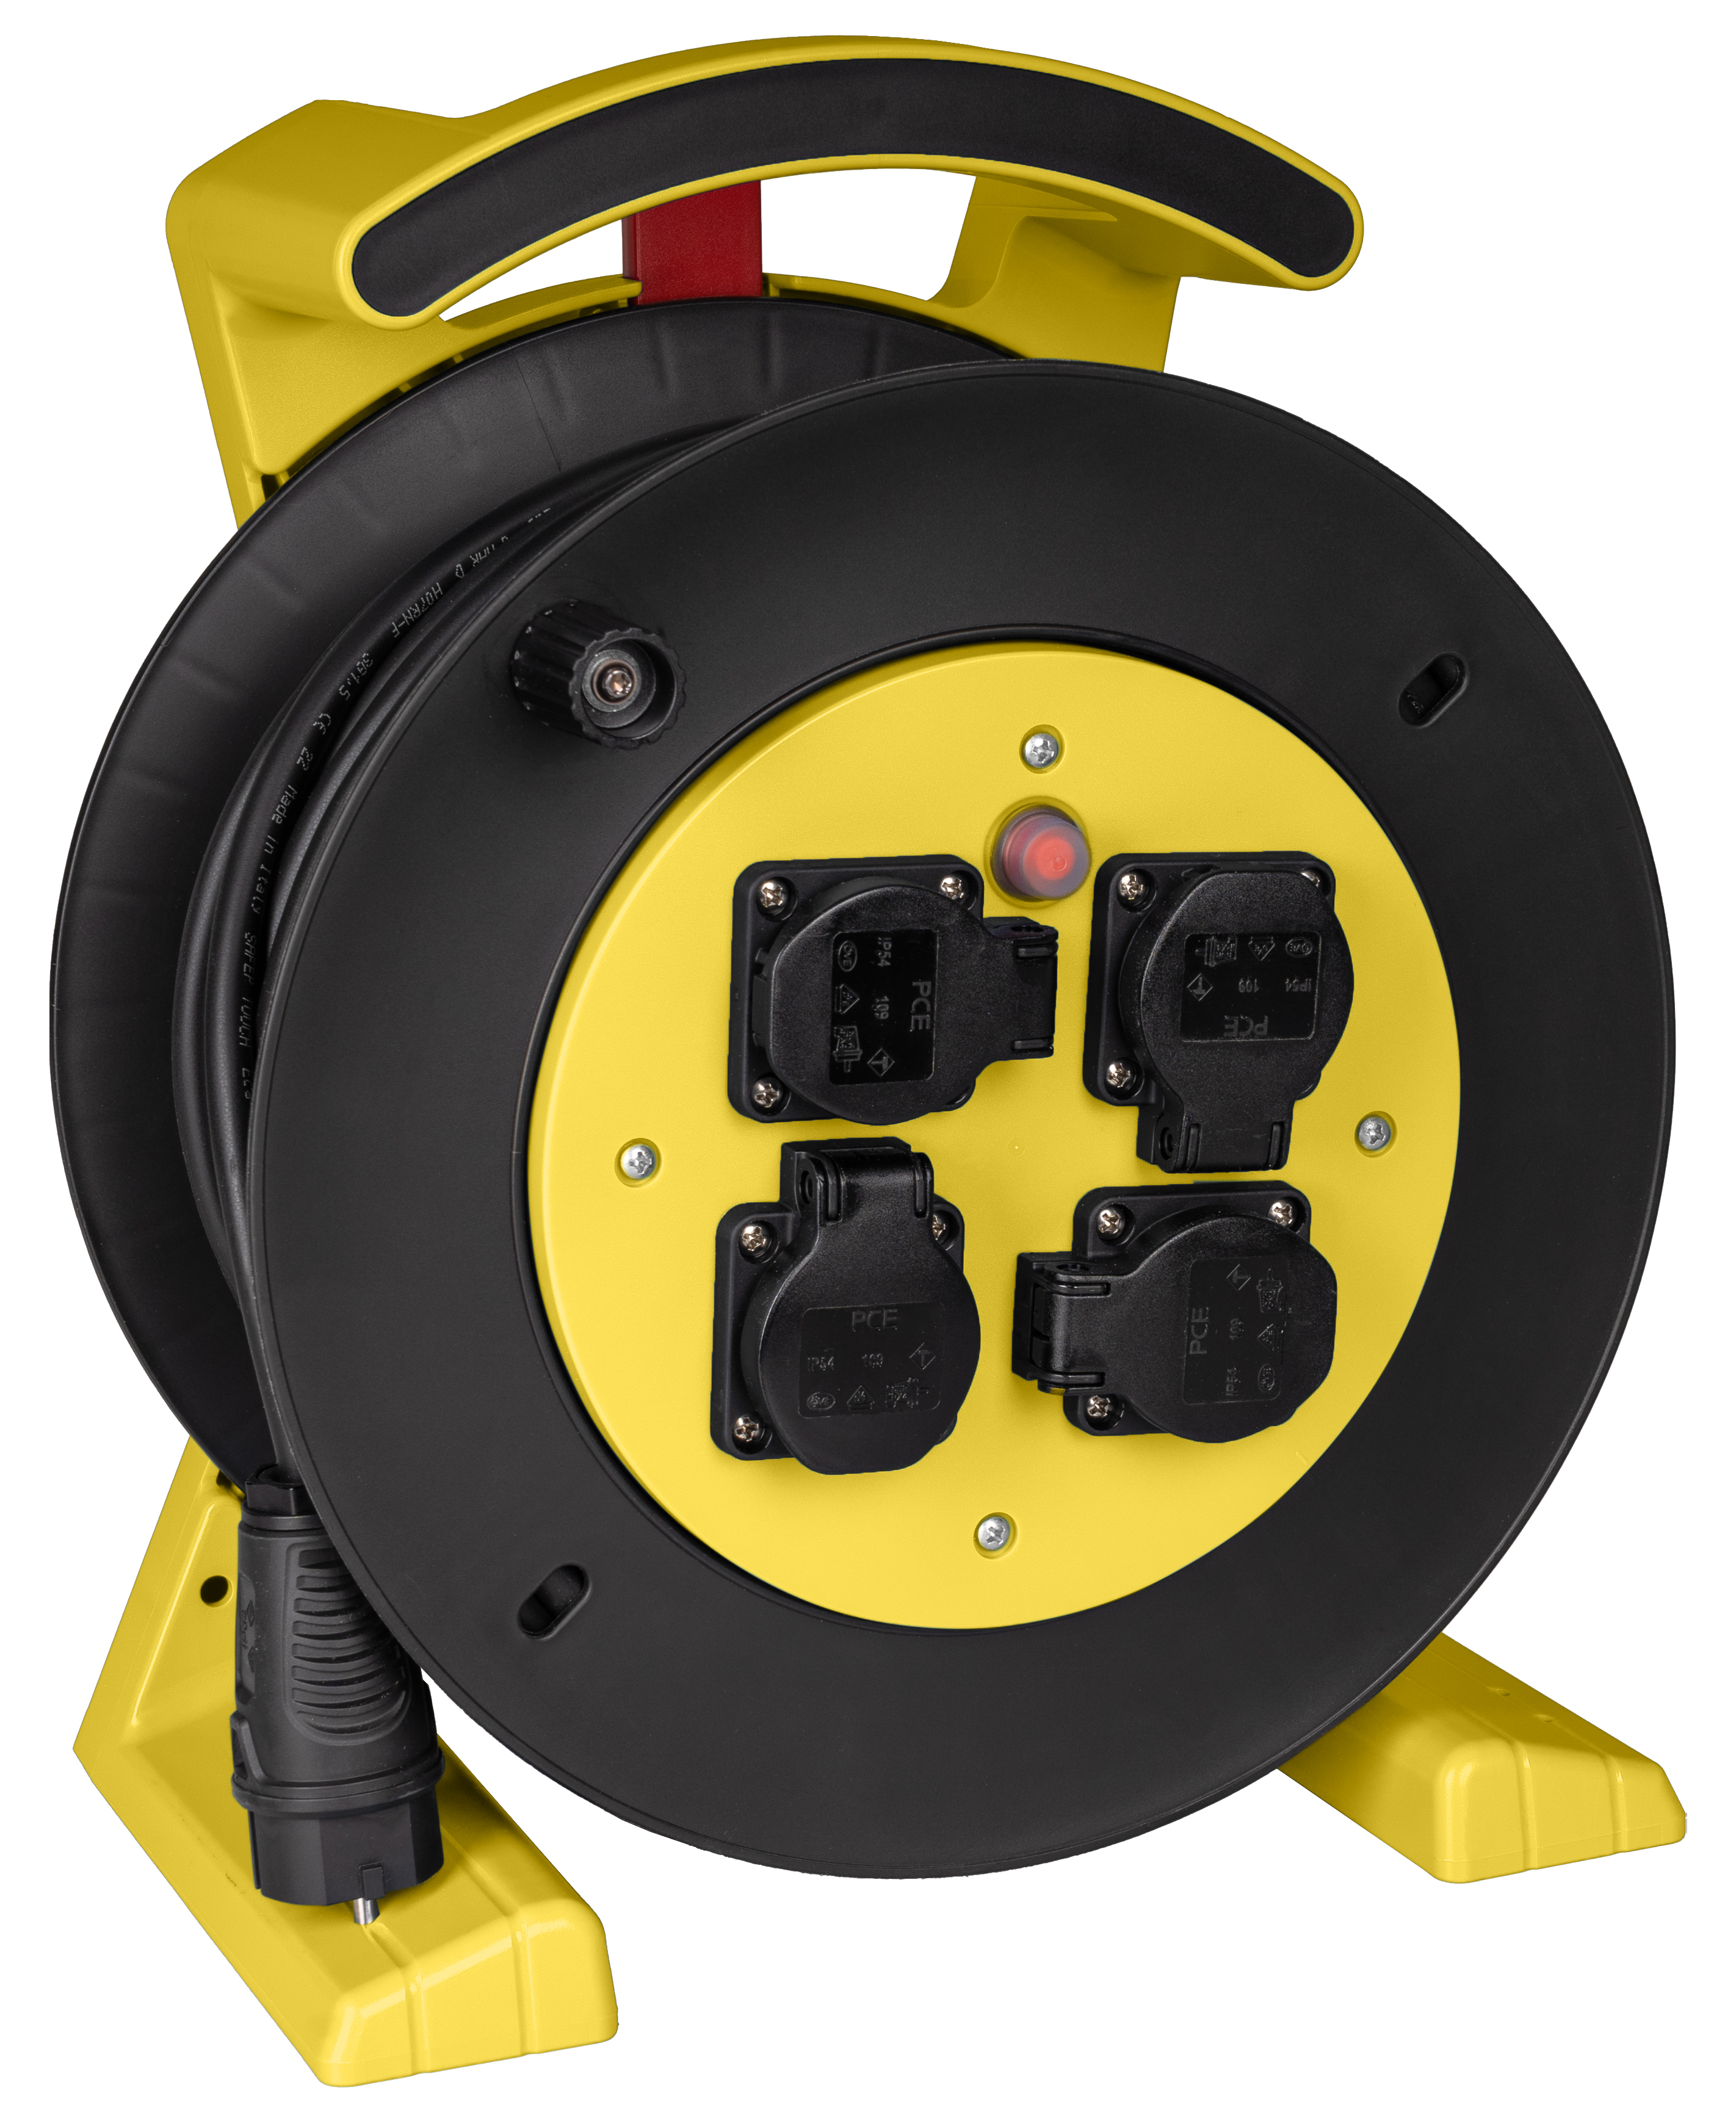 JUMBO kabelhaspel 2.0 in geel-zwart, 4 contactdozen, H07RN-F 3G2,5 mm², 25 m